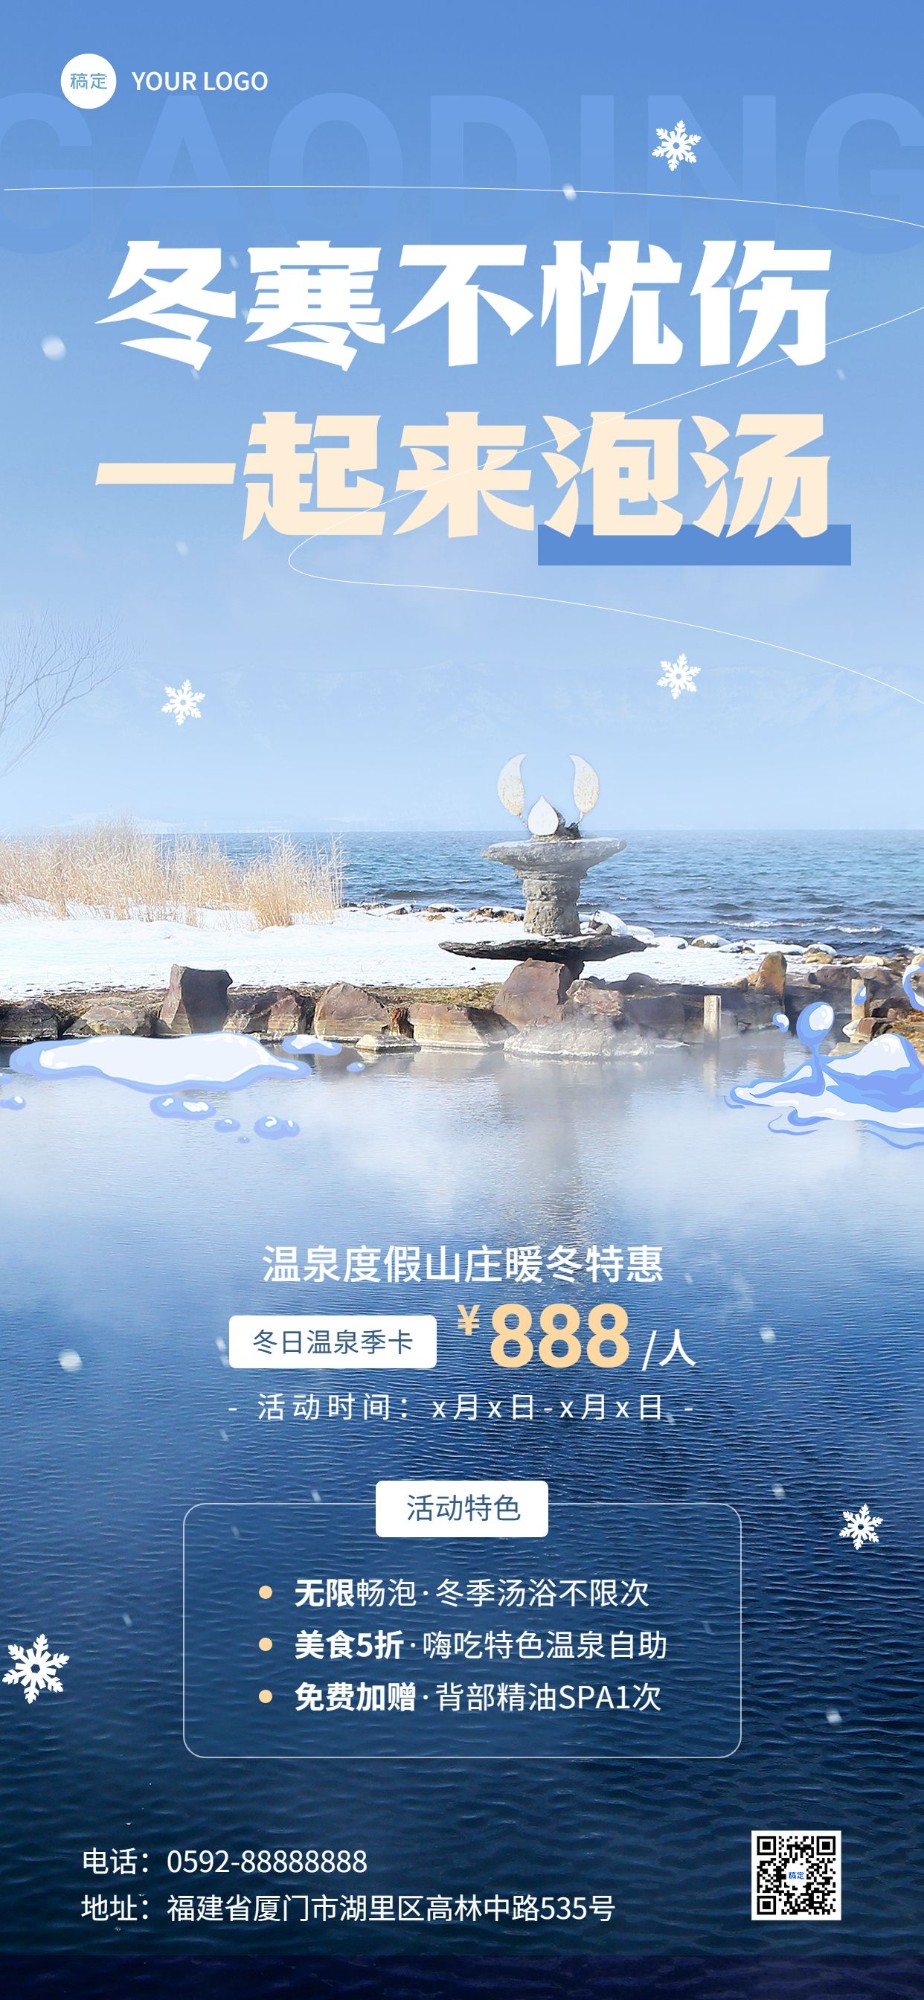 24旅游出行温泉山庄度假区冬季促销全屏竖版海报预览效果